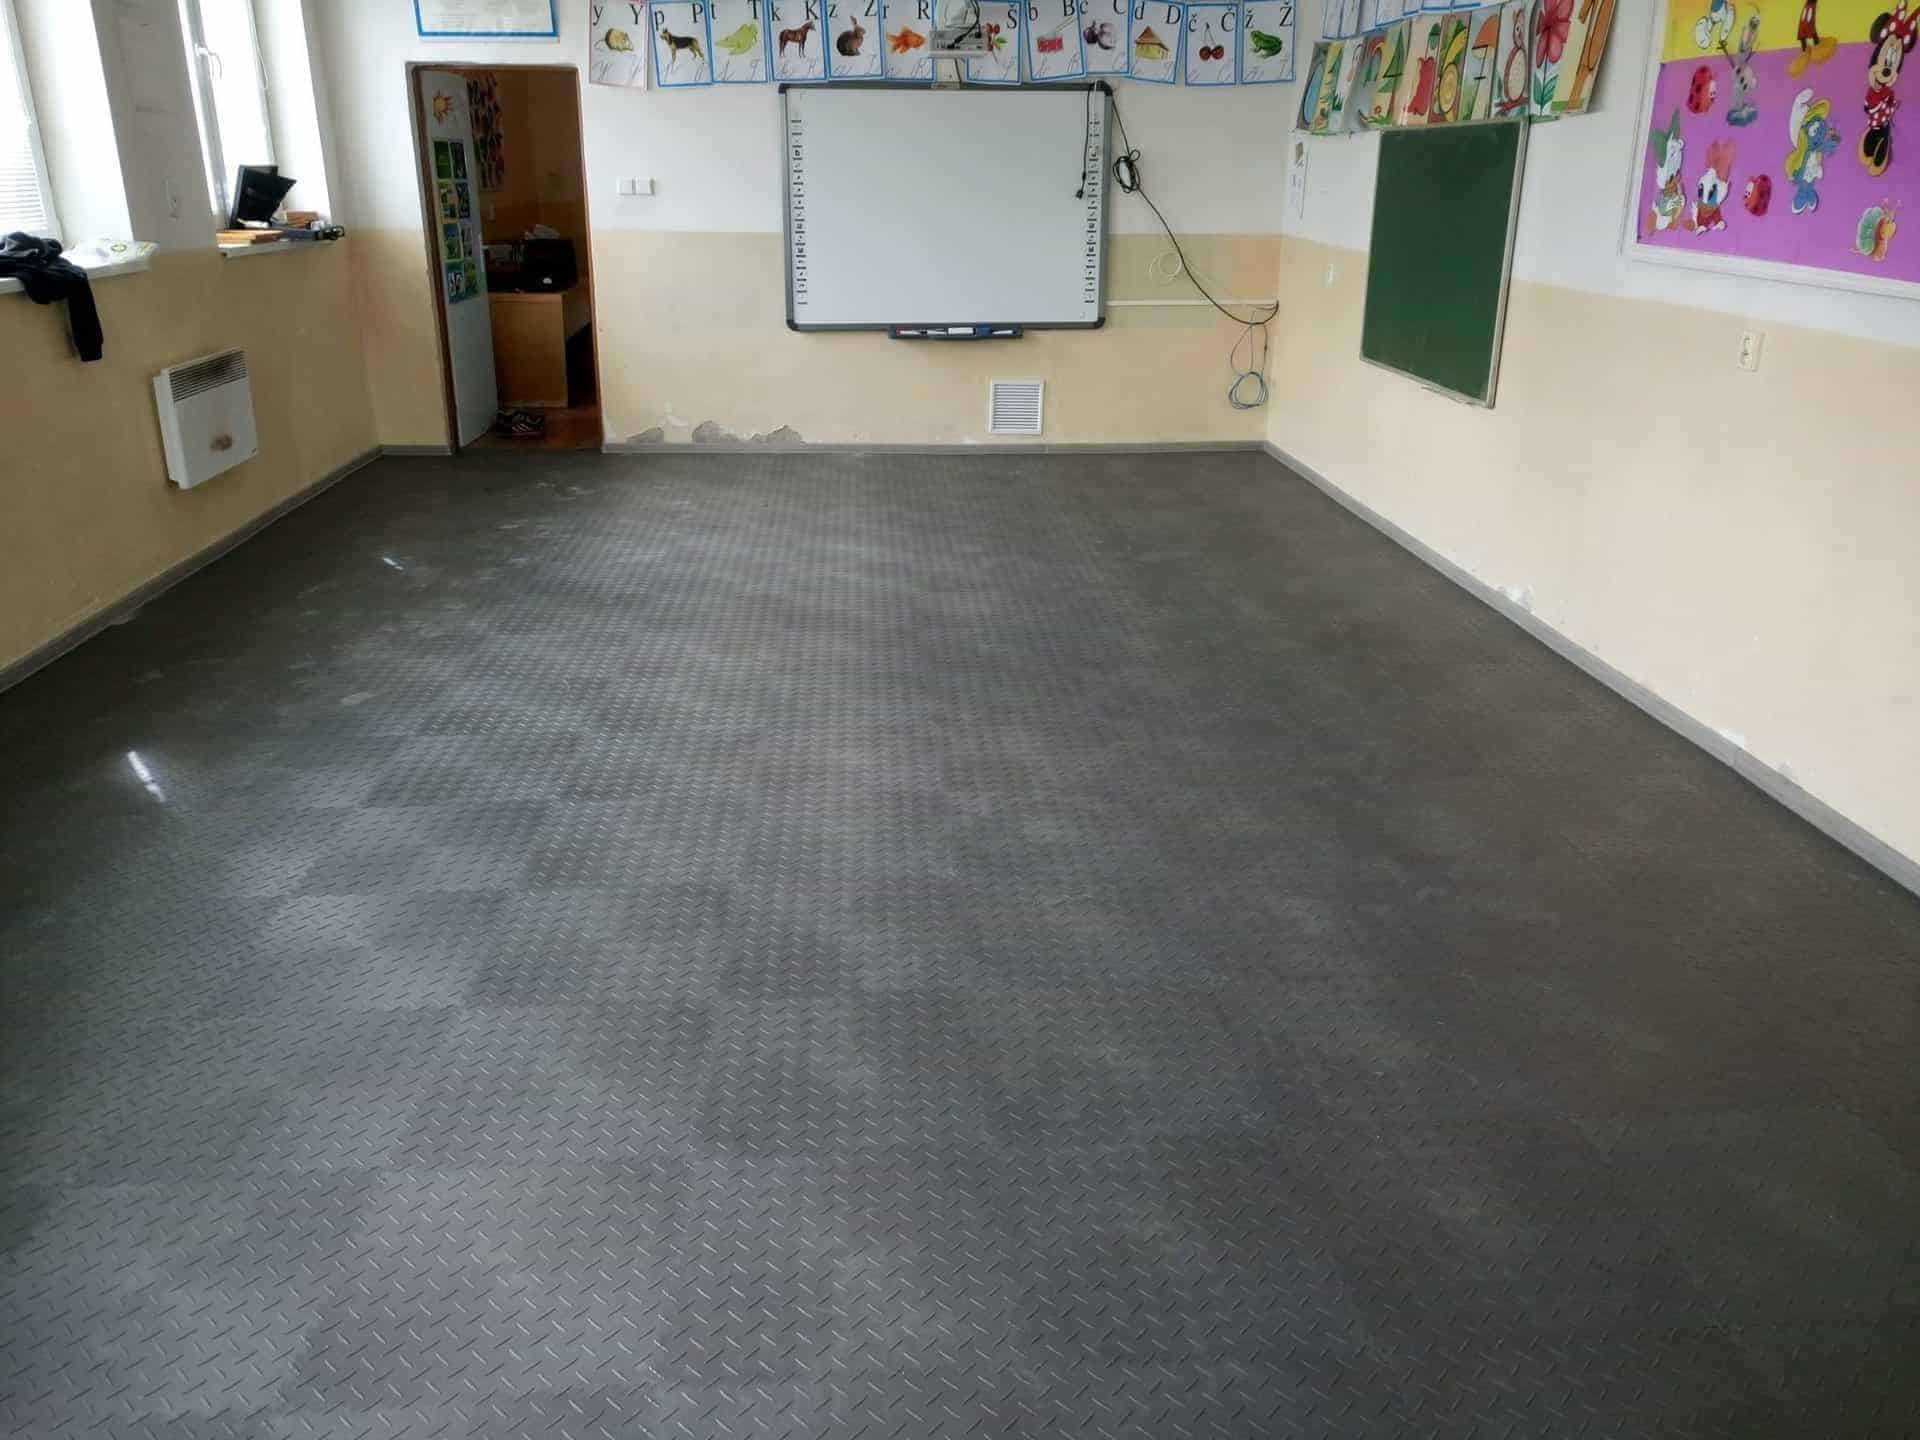 Floor in primary school, Slovakia